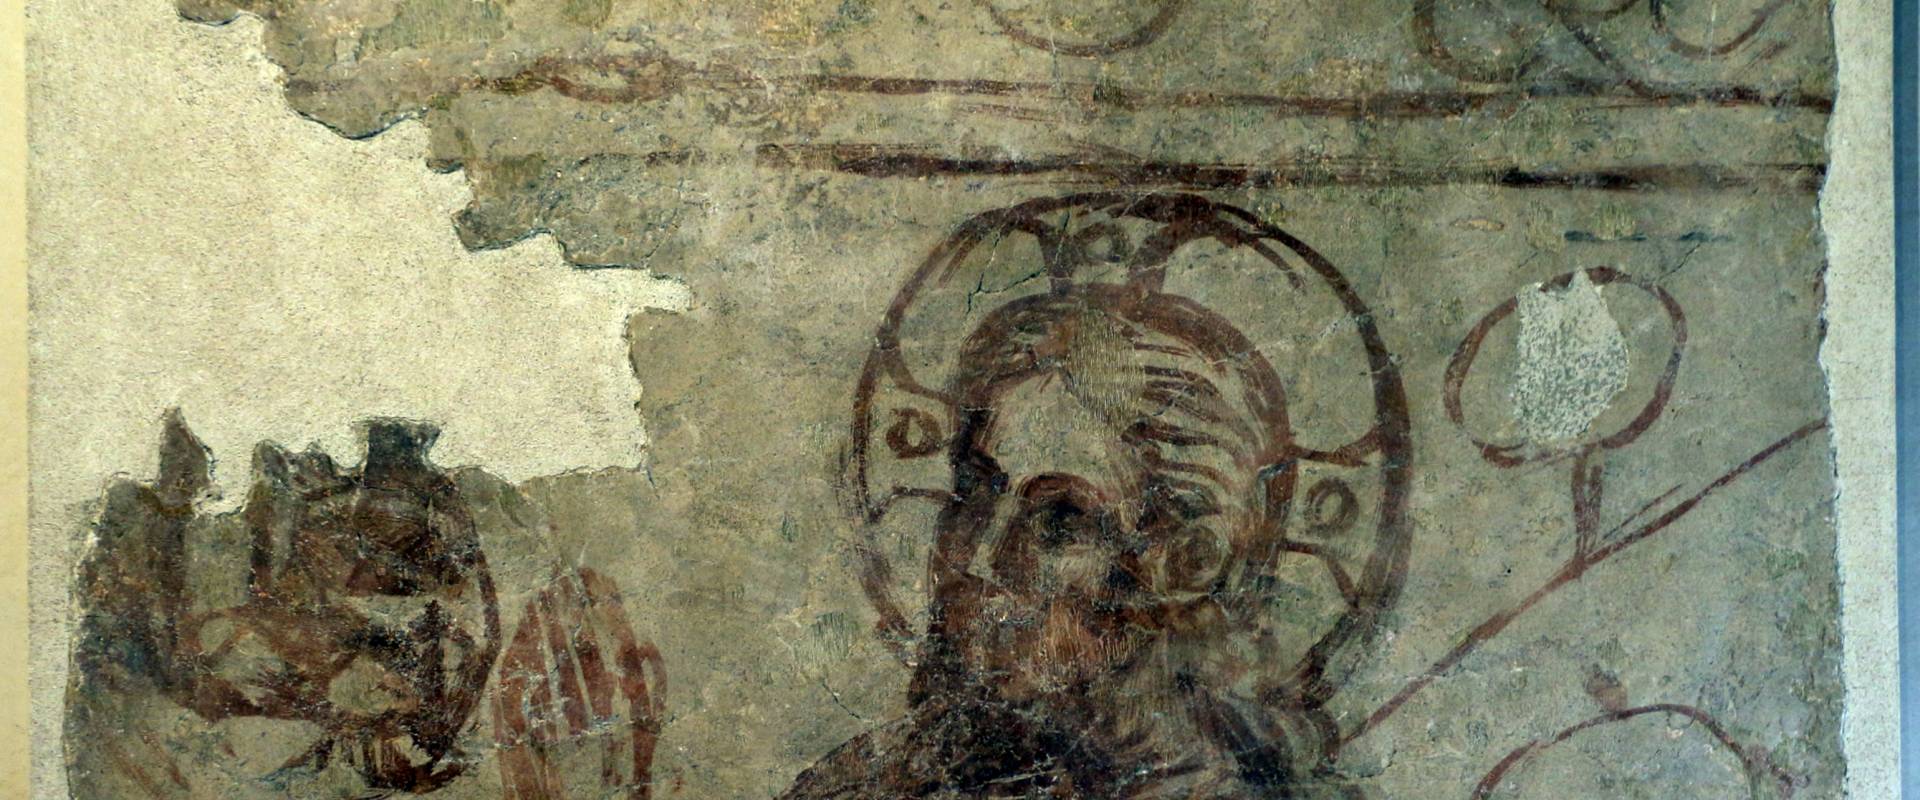 Scuola padana, testa di cristo in preghiera nell'ortoi, 1350-1400 ca, da ex-oratorio dei battuti bianchi a ferrara foto di Sailko